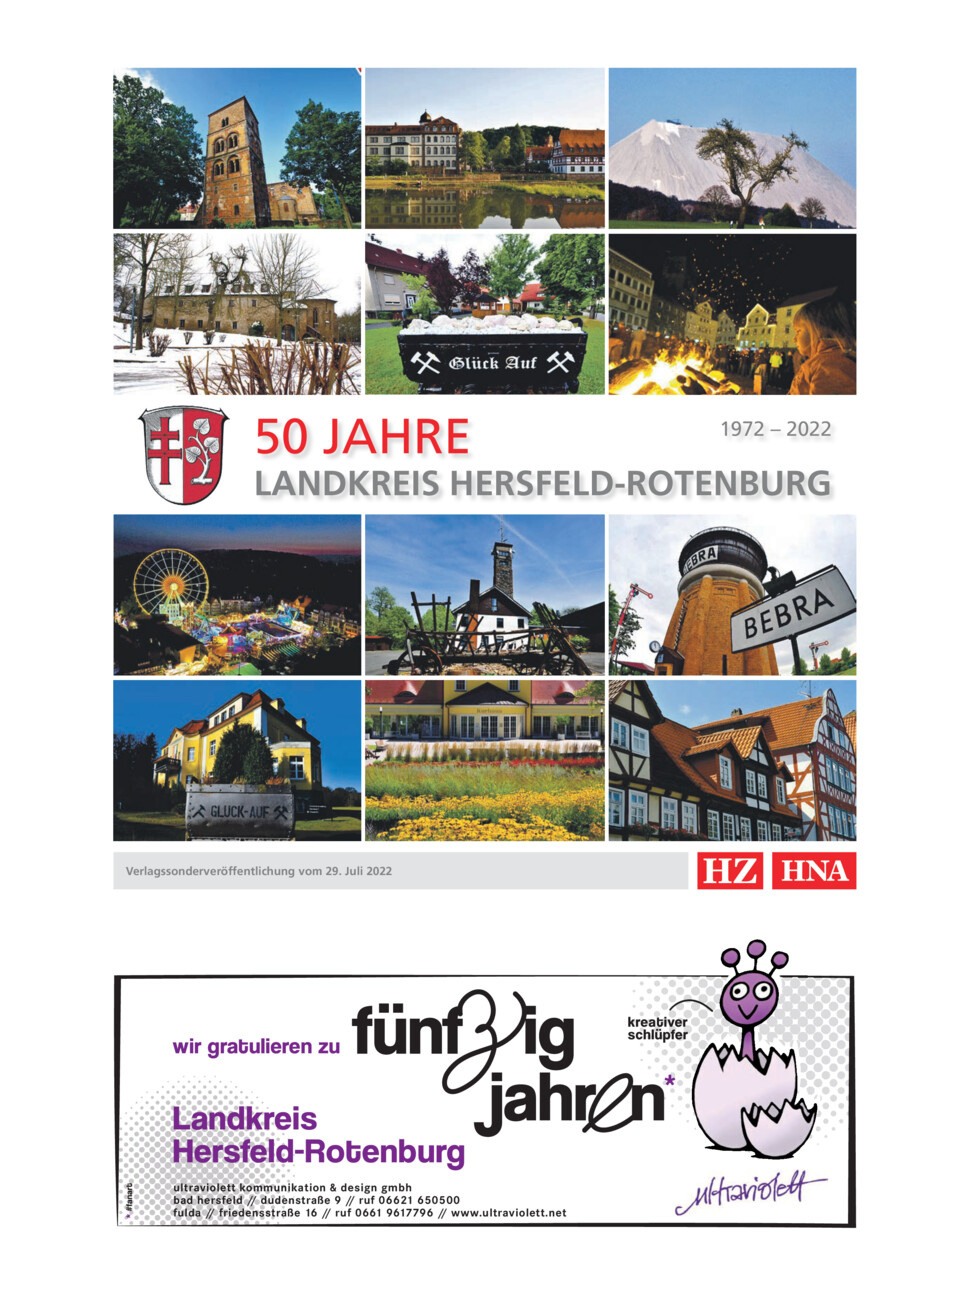 50 Jahre Landkreis Hersfeld-Rotenburg vom Montag, 15.08.2022